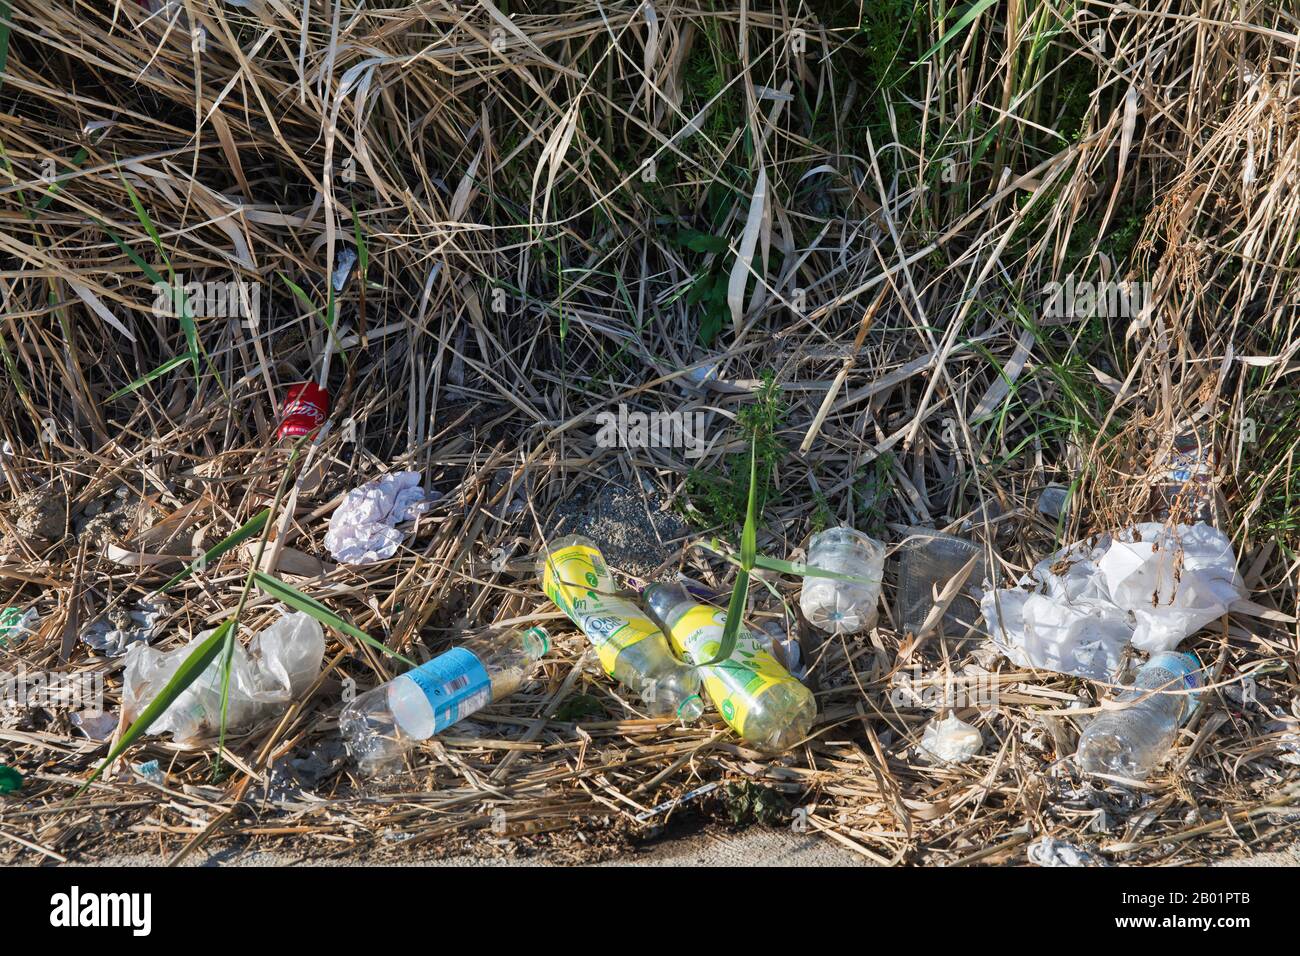 waste at road side, Spain, Andalusia, Costa de Almeria Stock Photo